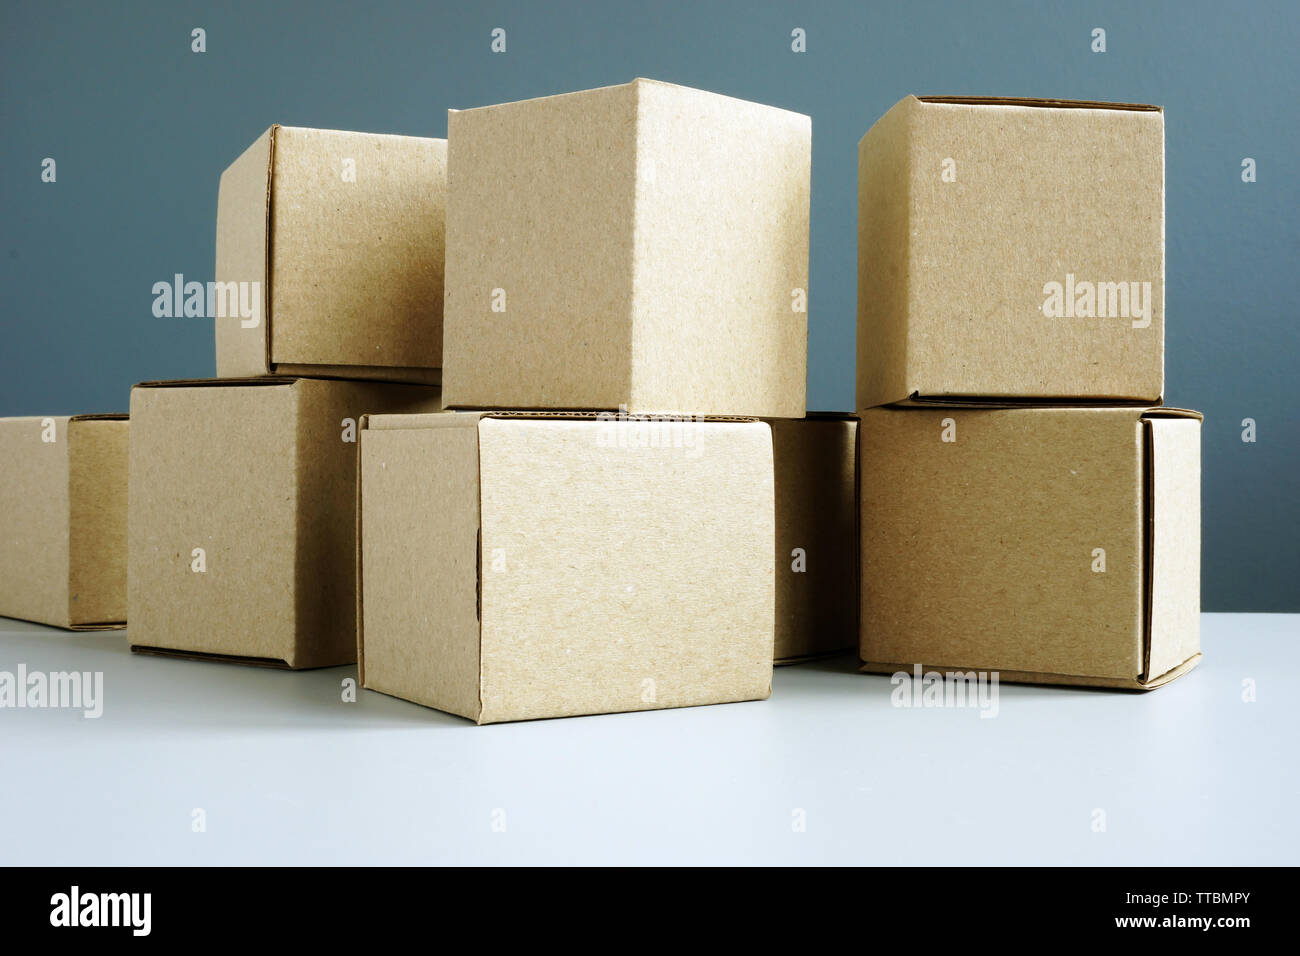 Boîte en carton pour l'Expédition et livraison sur surface. Banque D'Images